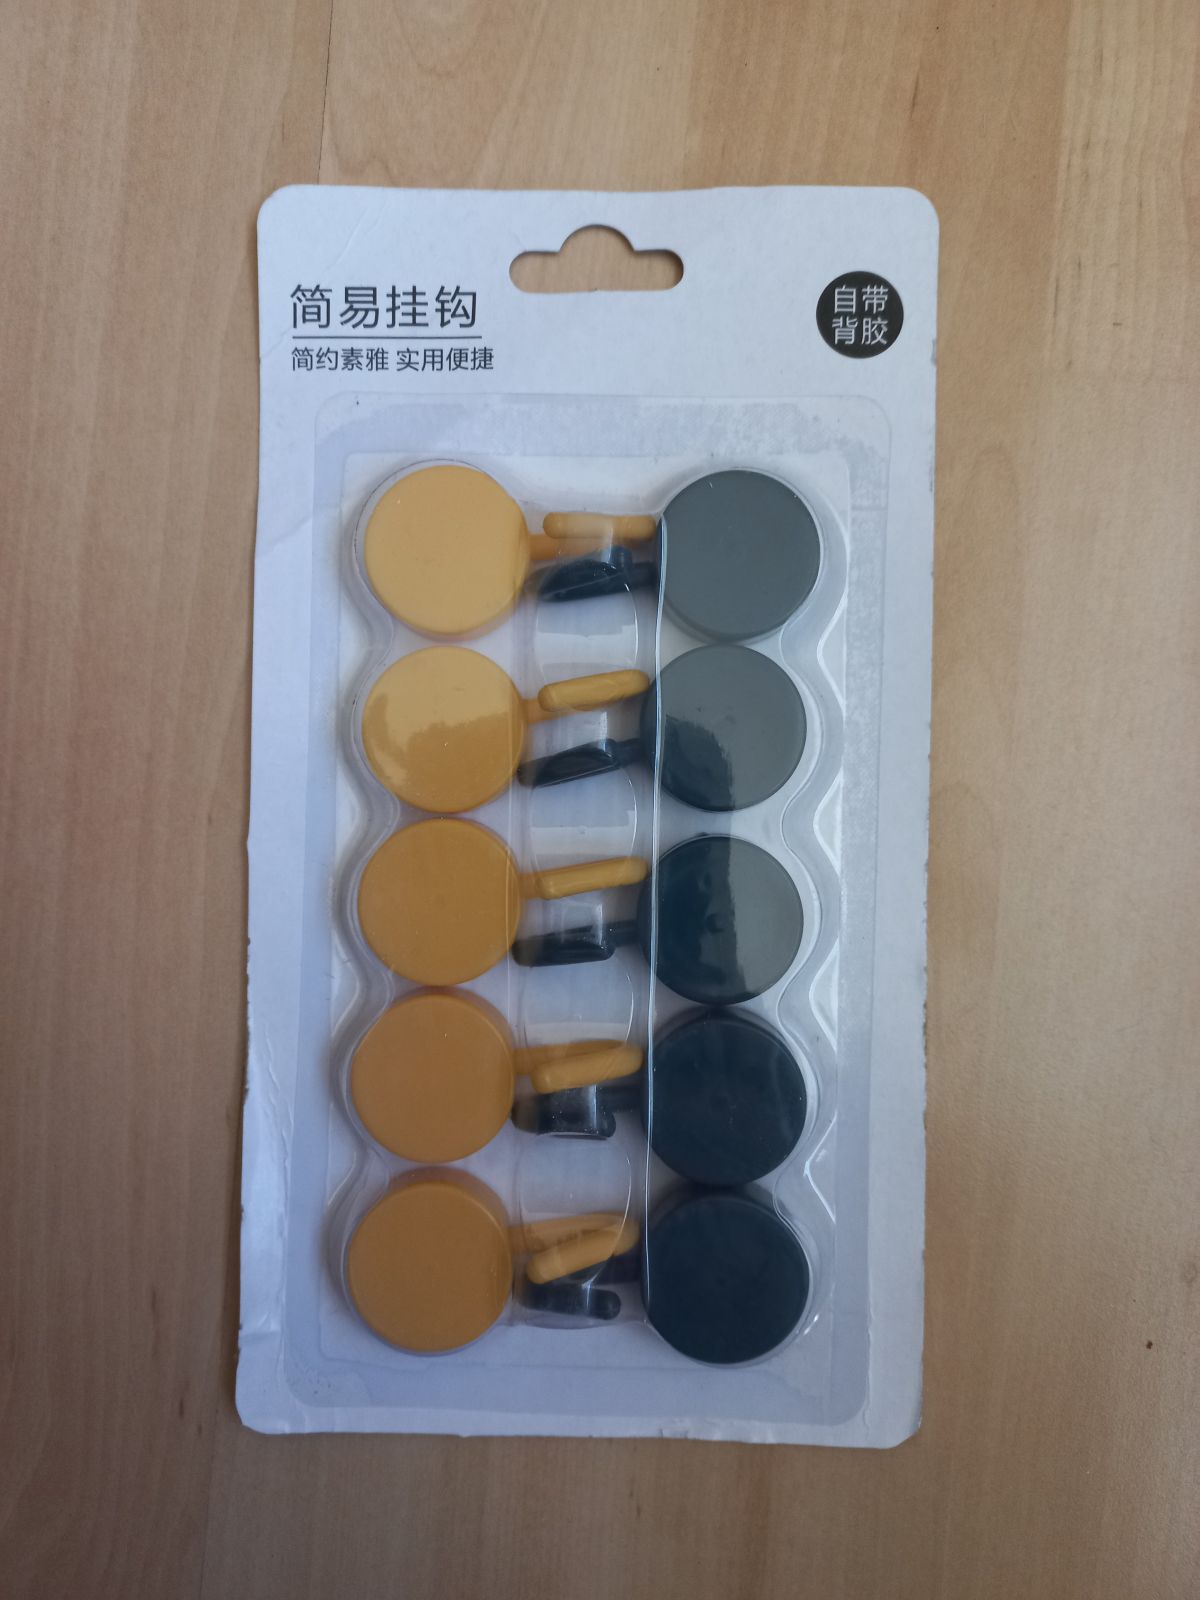 Self-adhesive hooks 10pcs. (plastic)